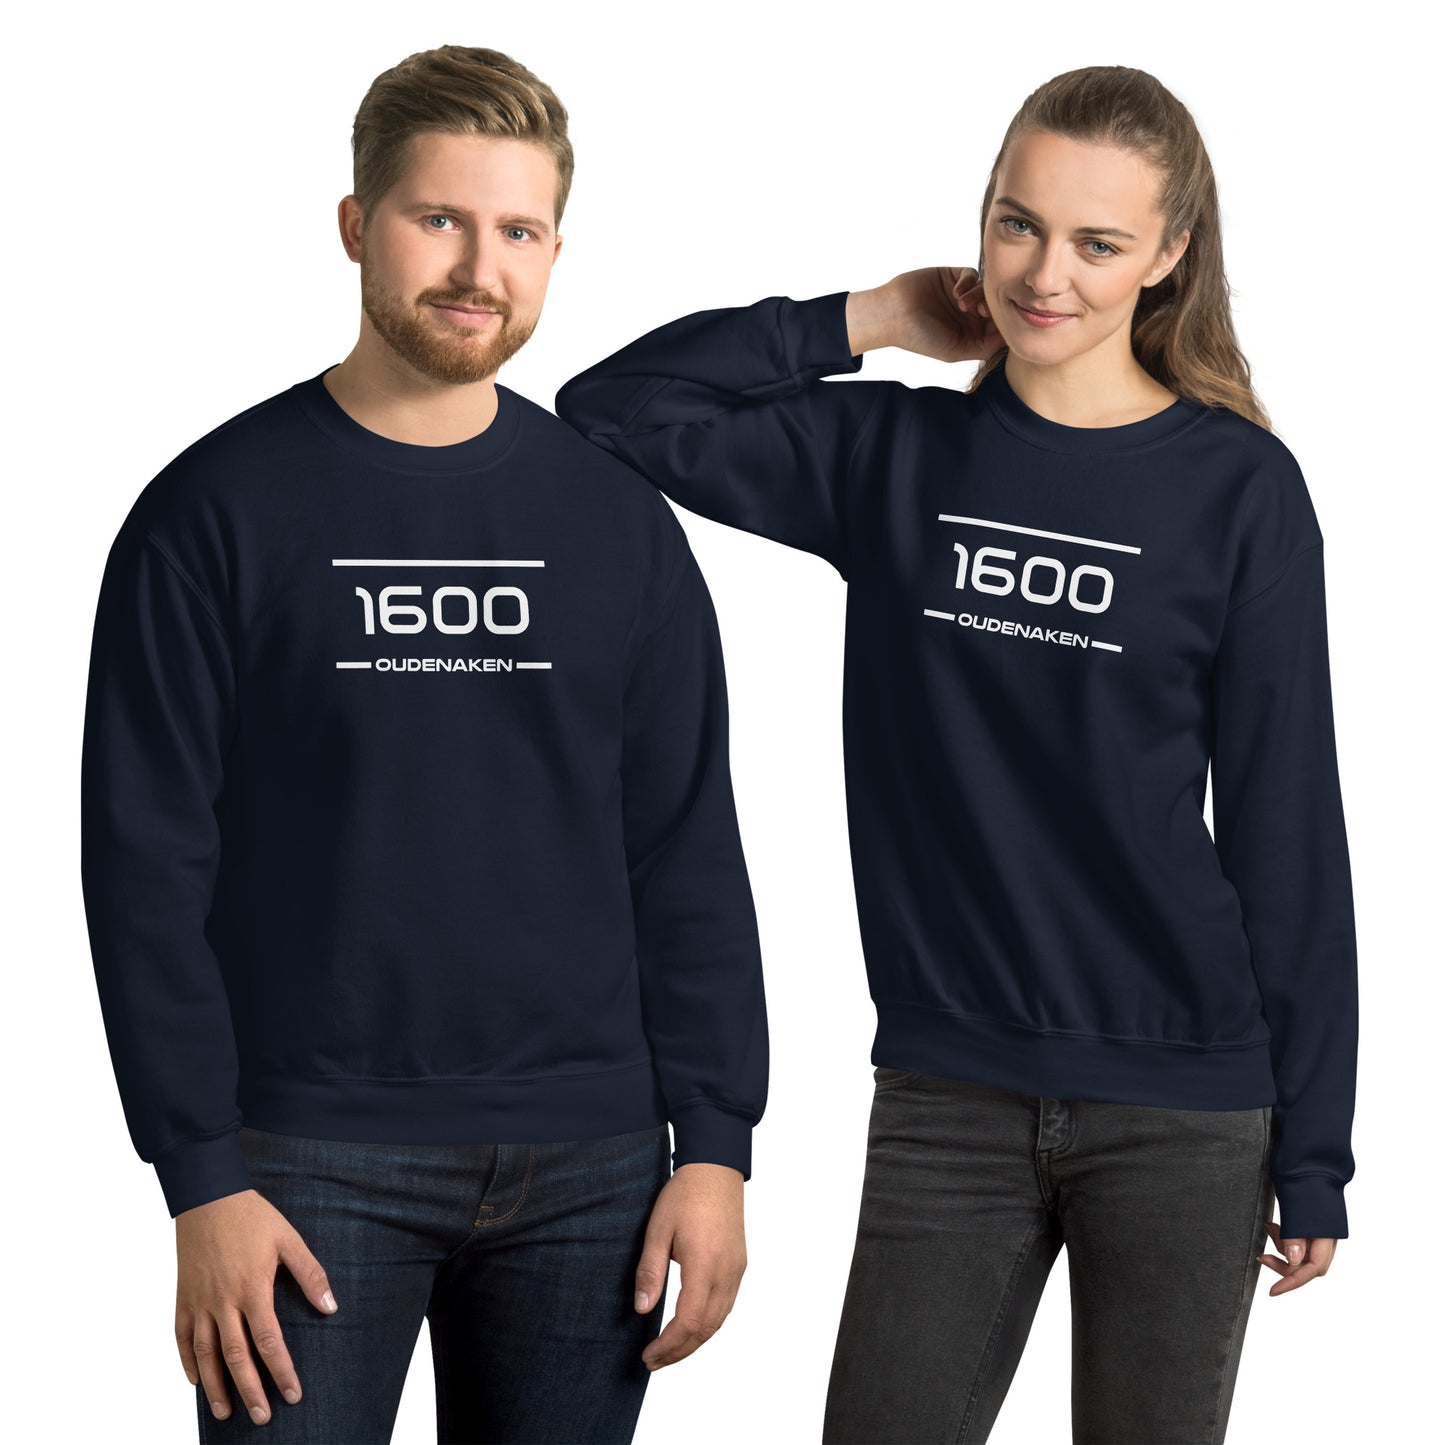 Sweater - 1600 - Oudenaken (M/V)